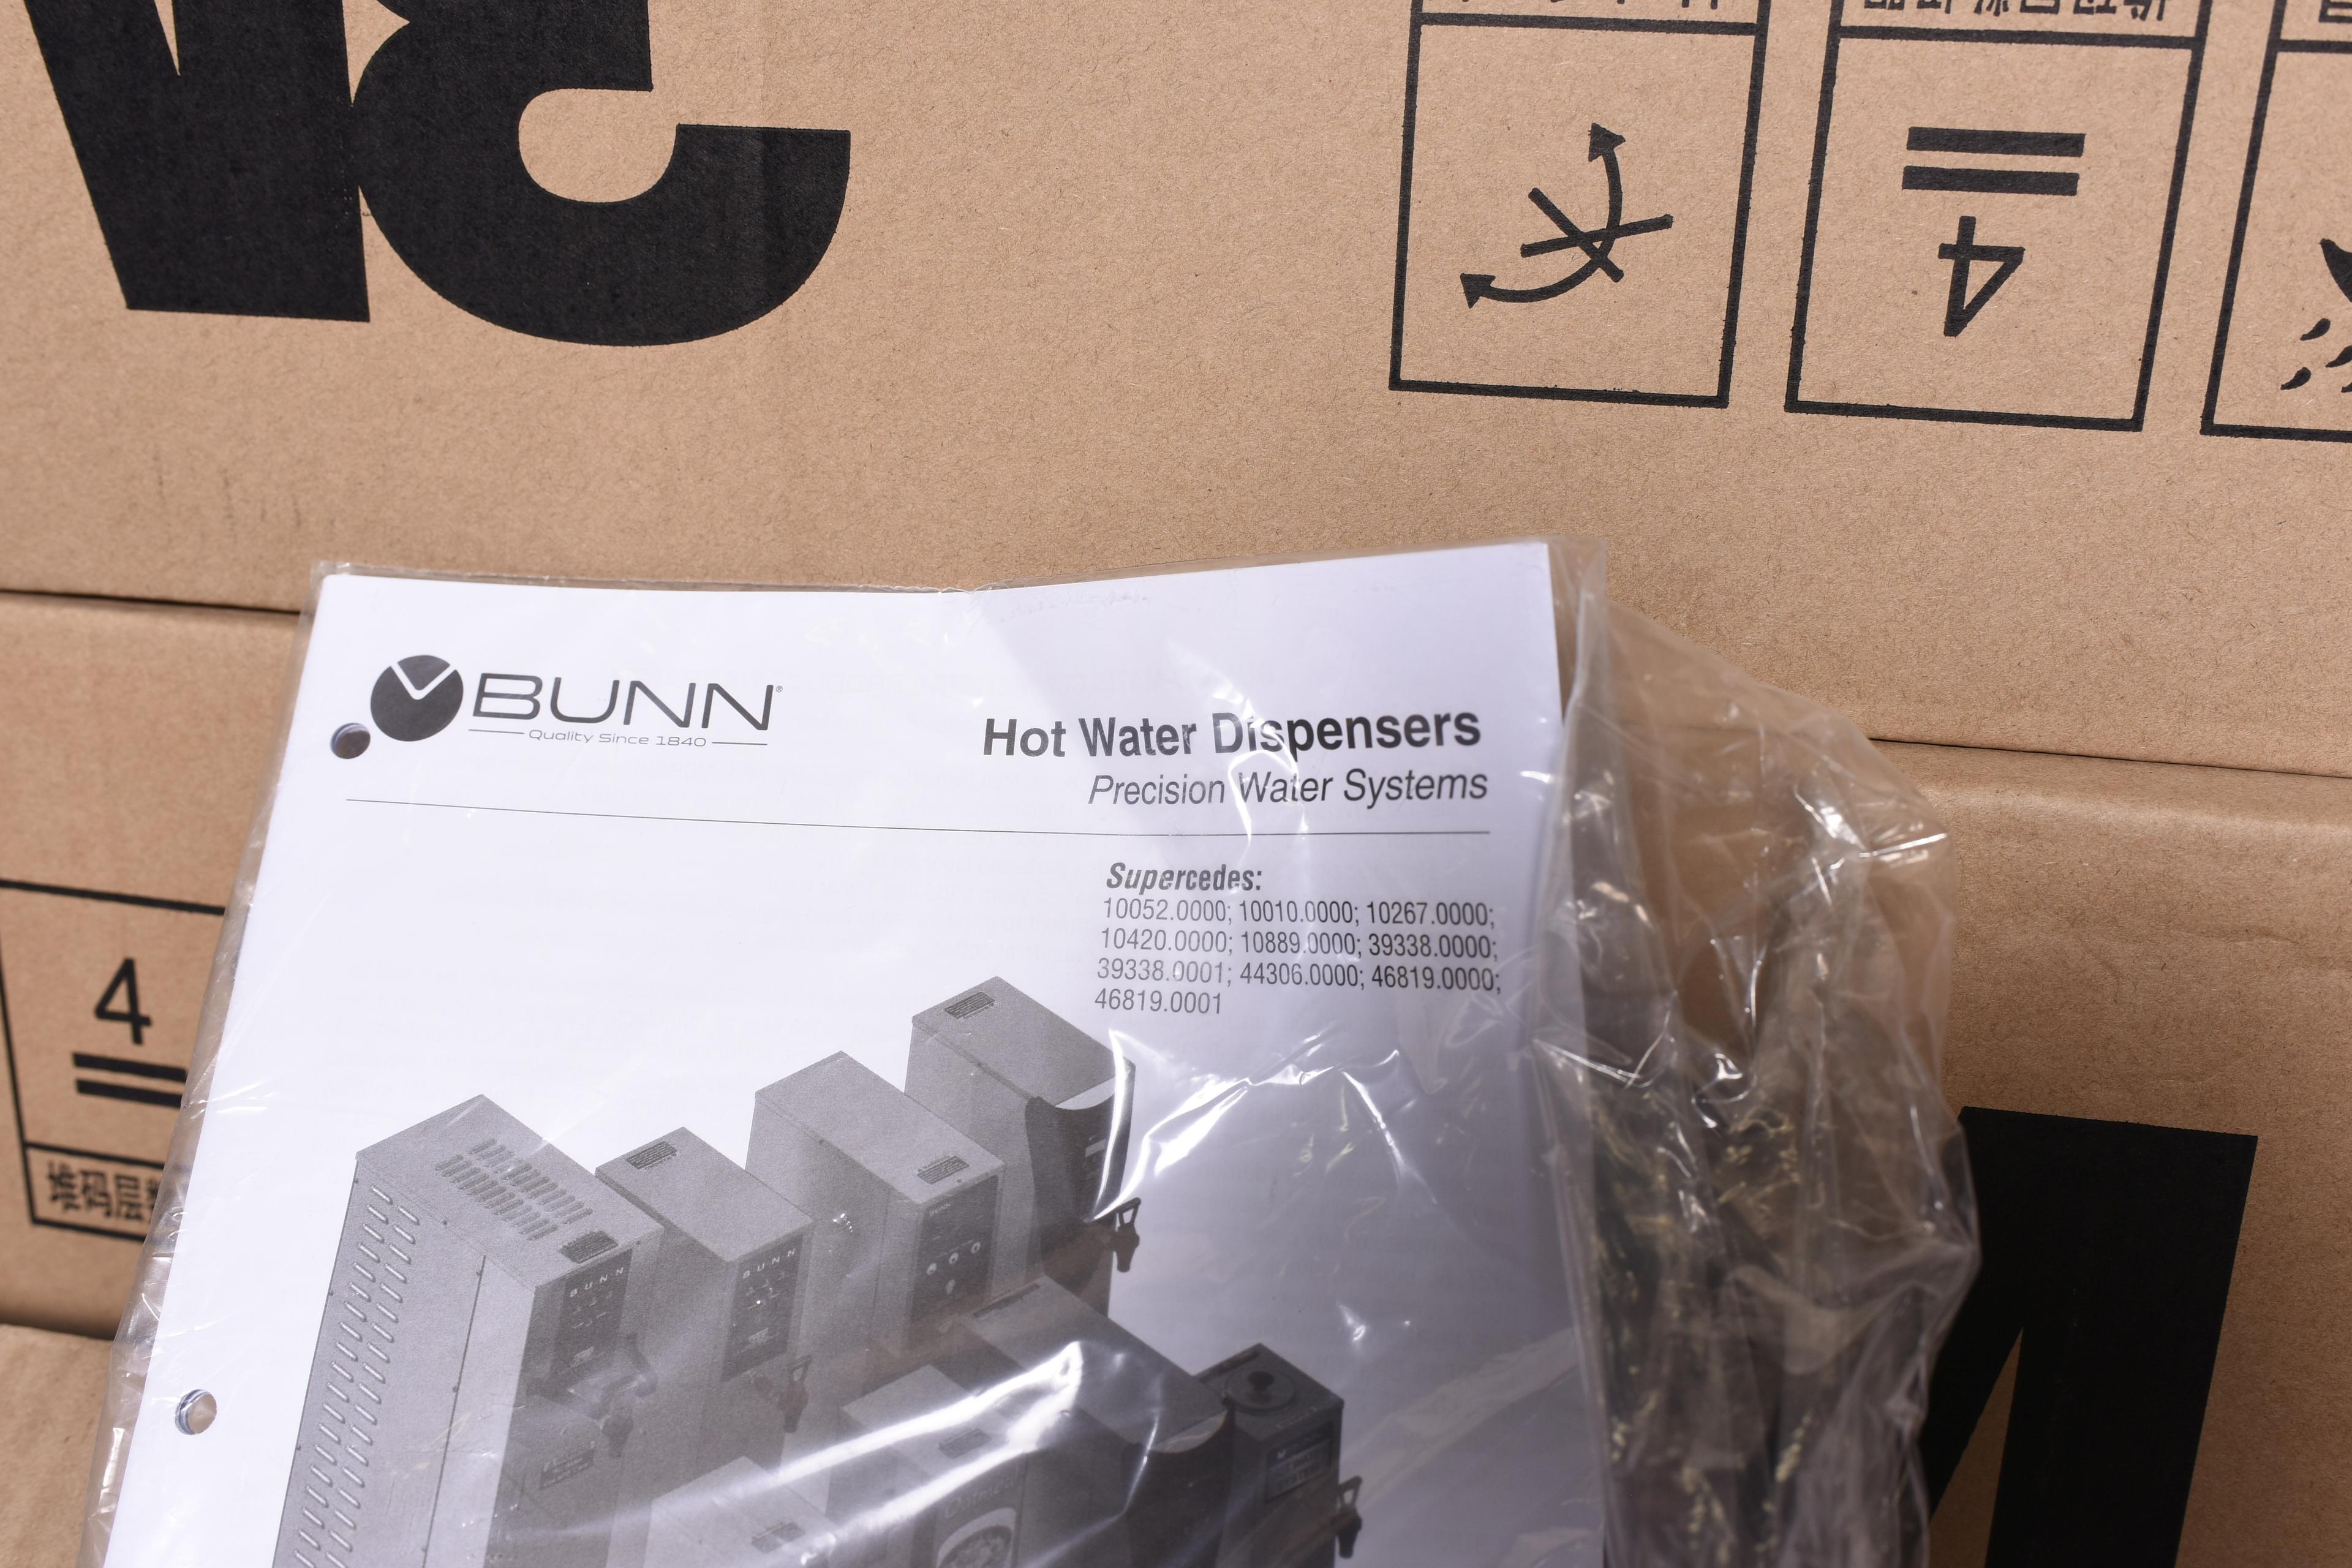 2 Bunn HW20040474 Hot Water Dispensers